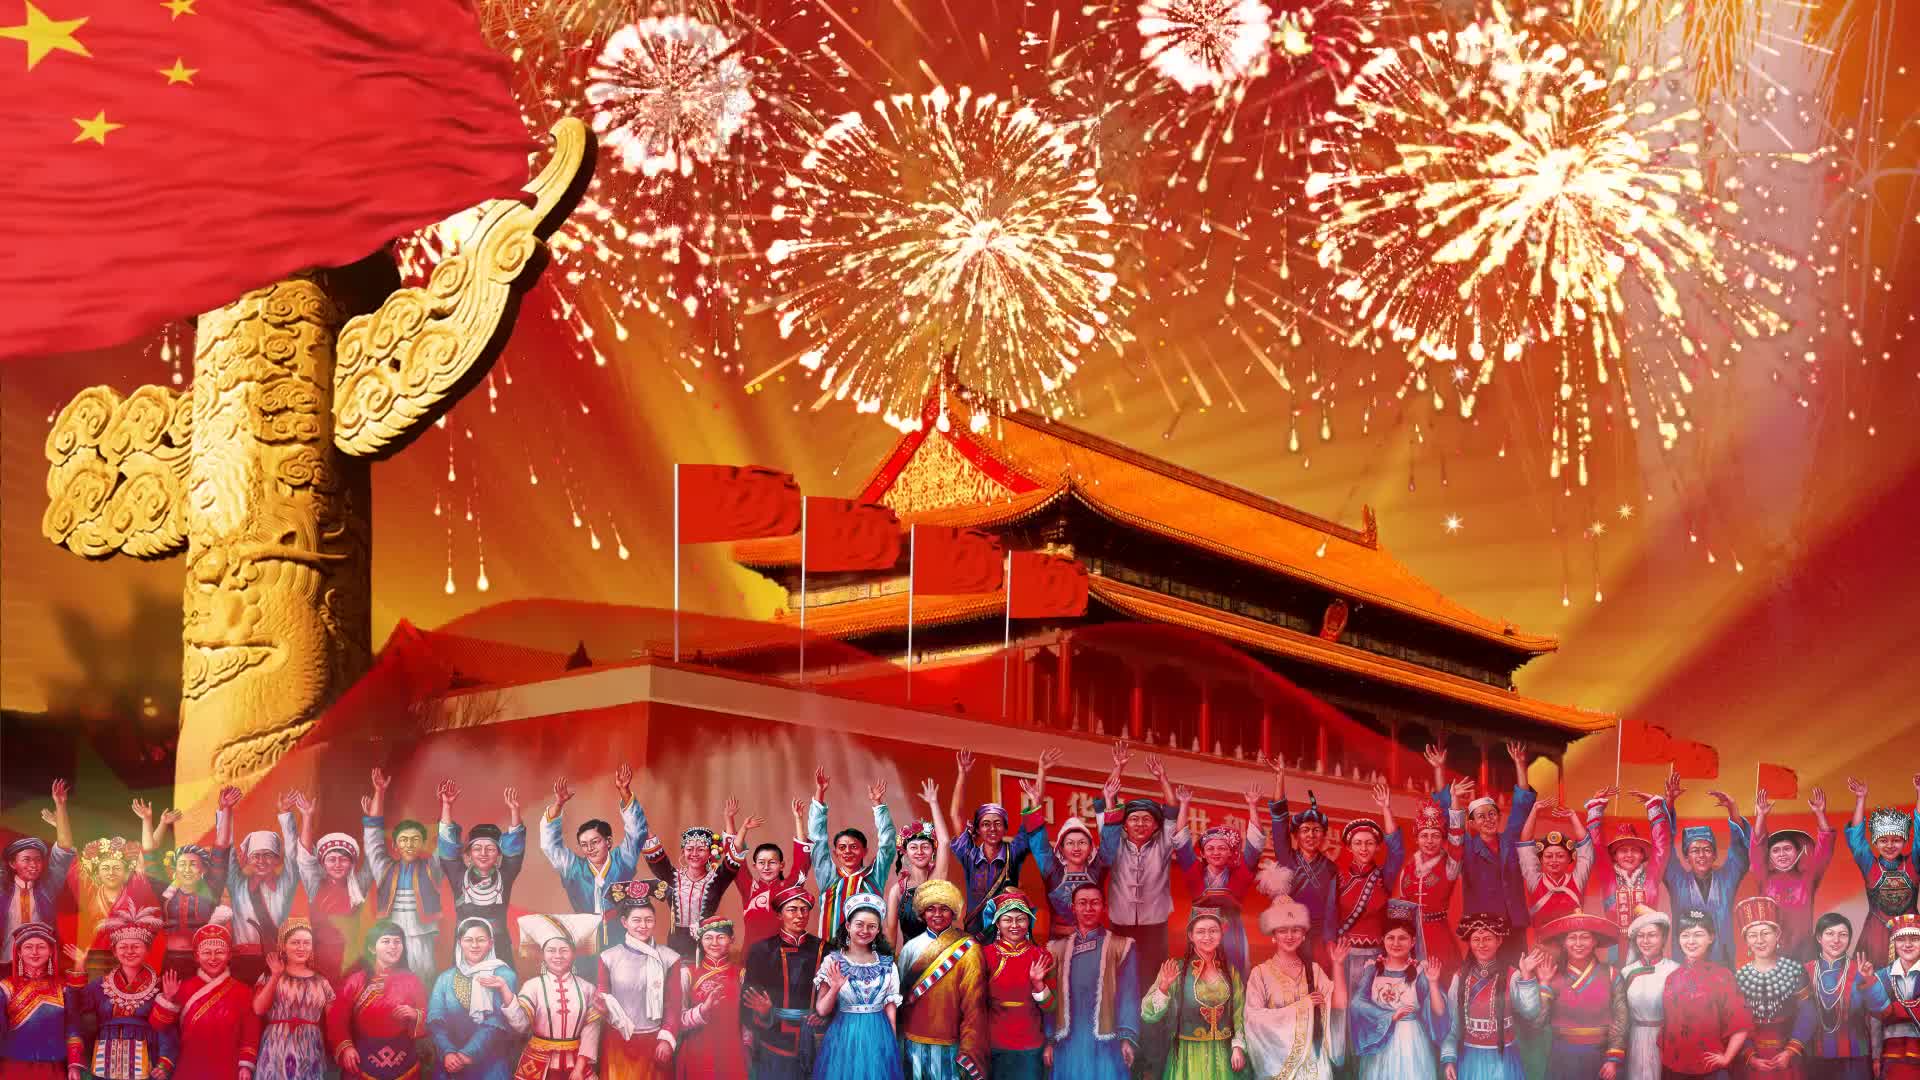 爱我中华配乐视频背景五十六个民族歌颂祖国红歌背景建党一百周年歌曲背景